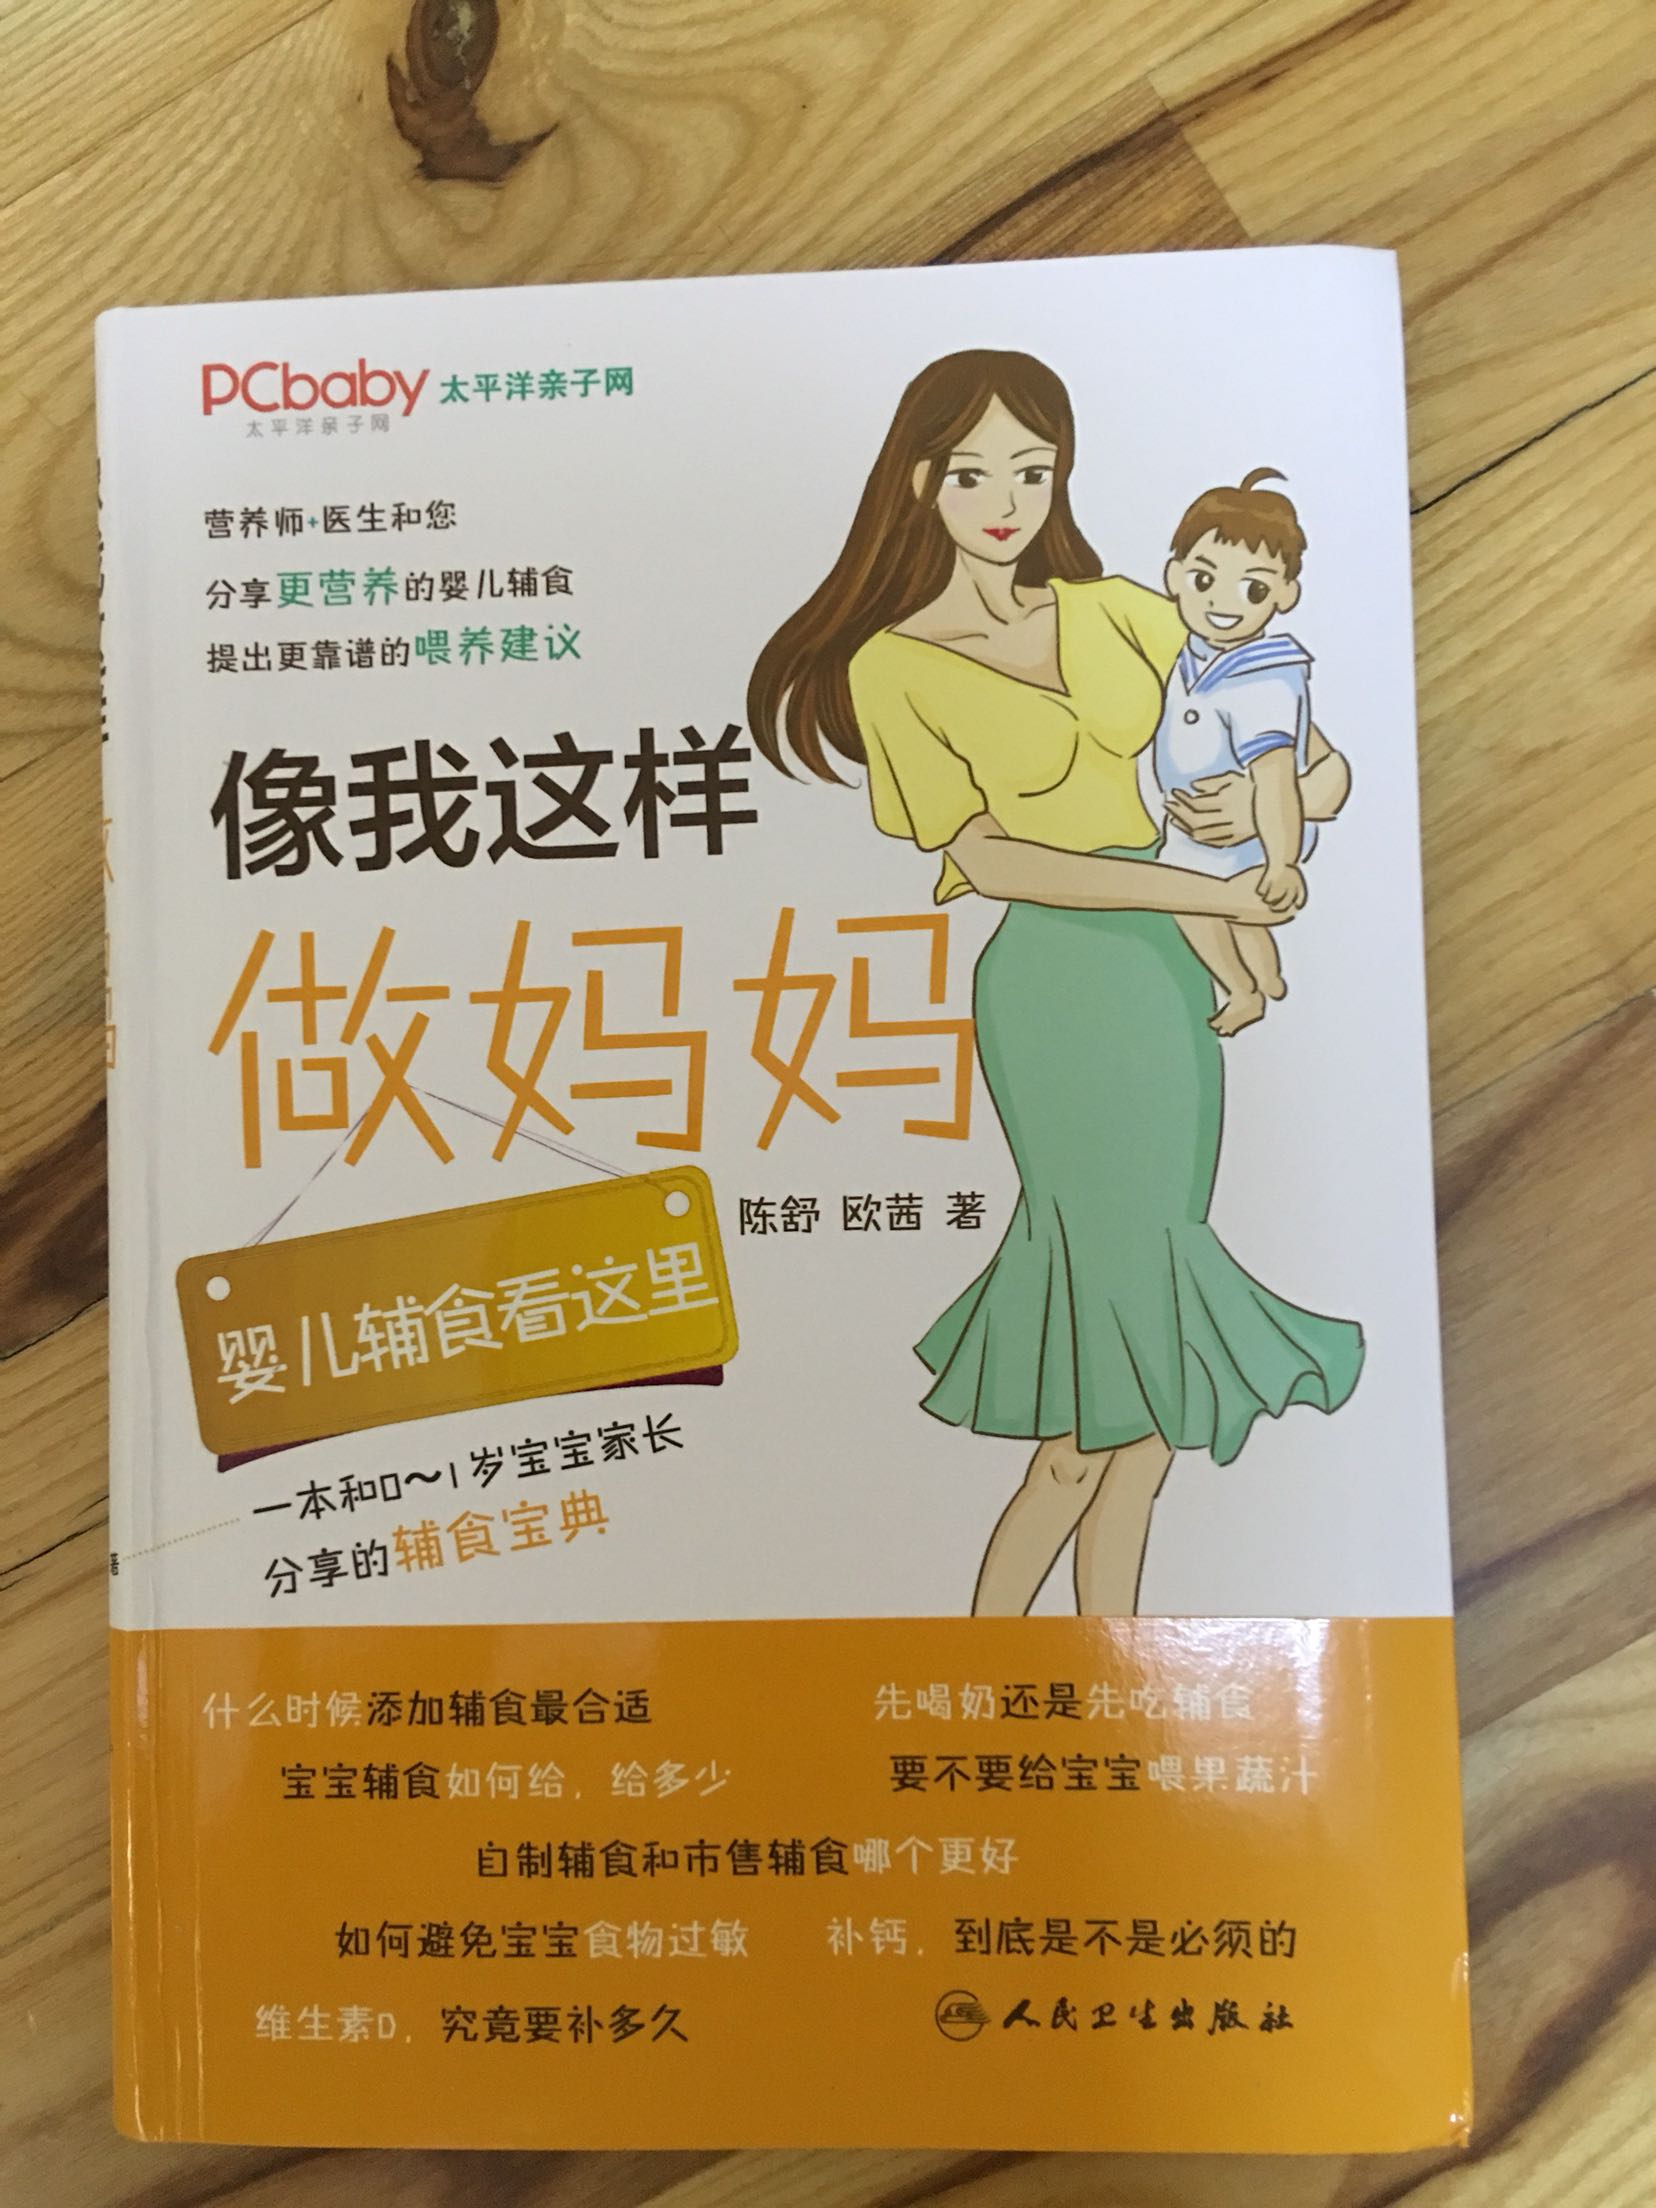 详细地介绍了宝宝喂养问题，还有几十种辅食的做法。全铜版纸彩印，看起来很舒服